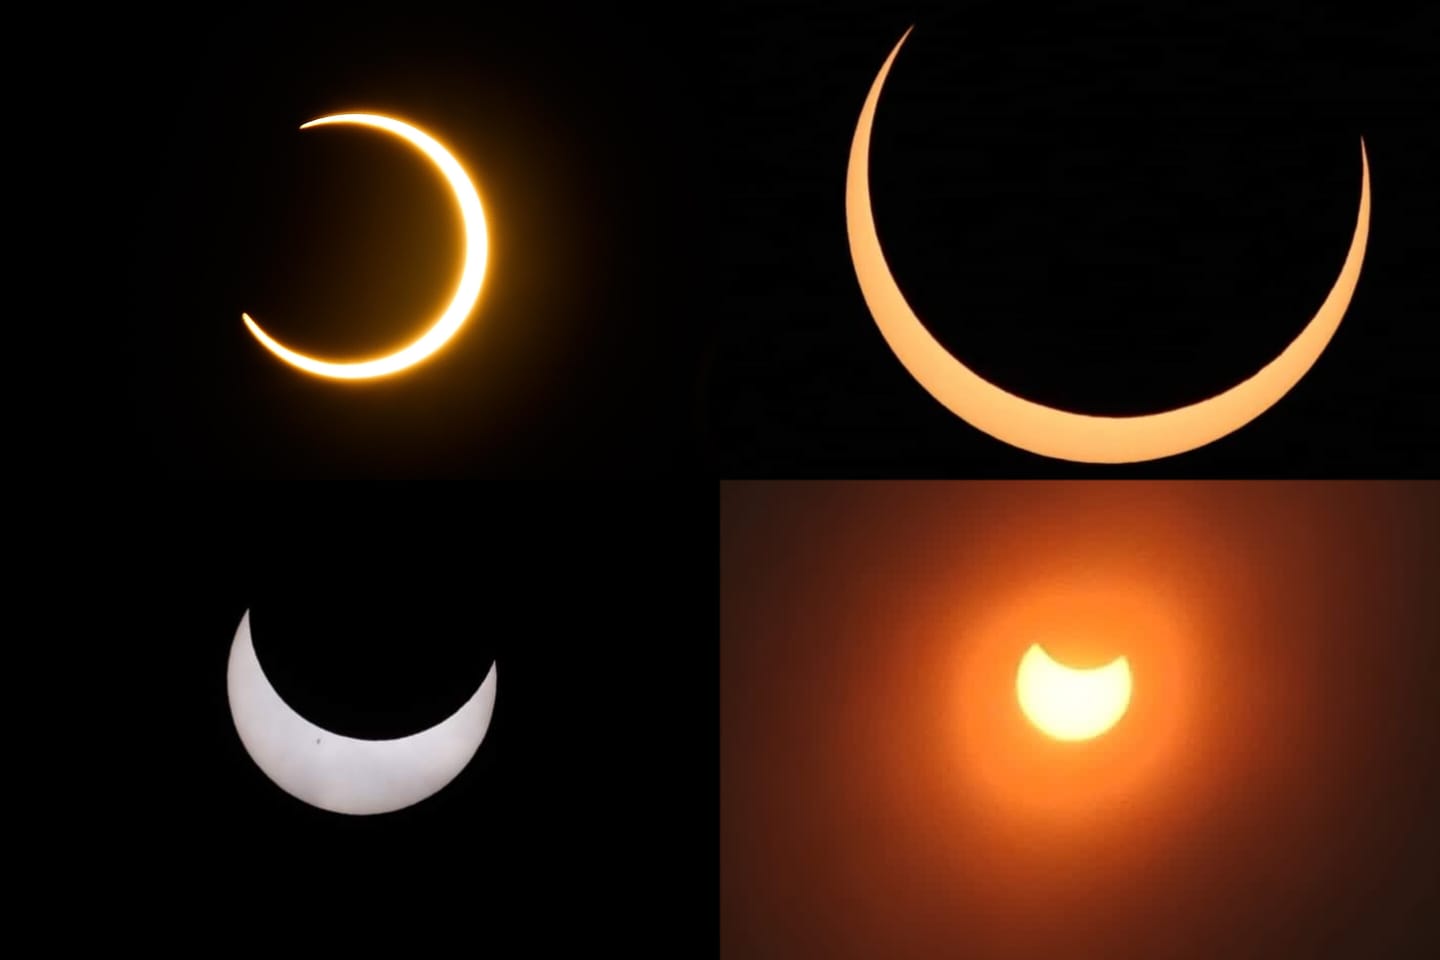 Un eclipse solar anular inicia su recorrido por el norte del continente americano